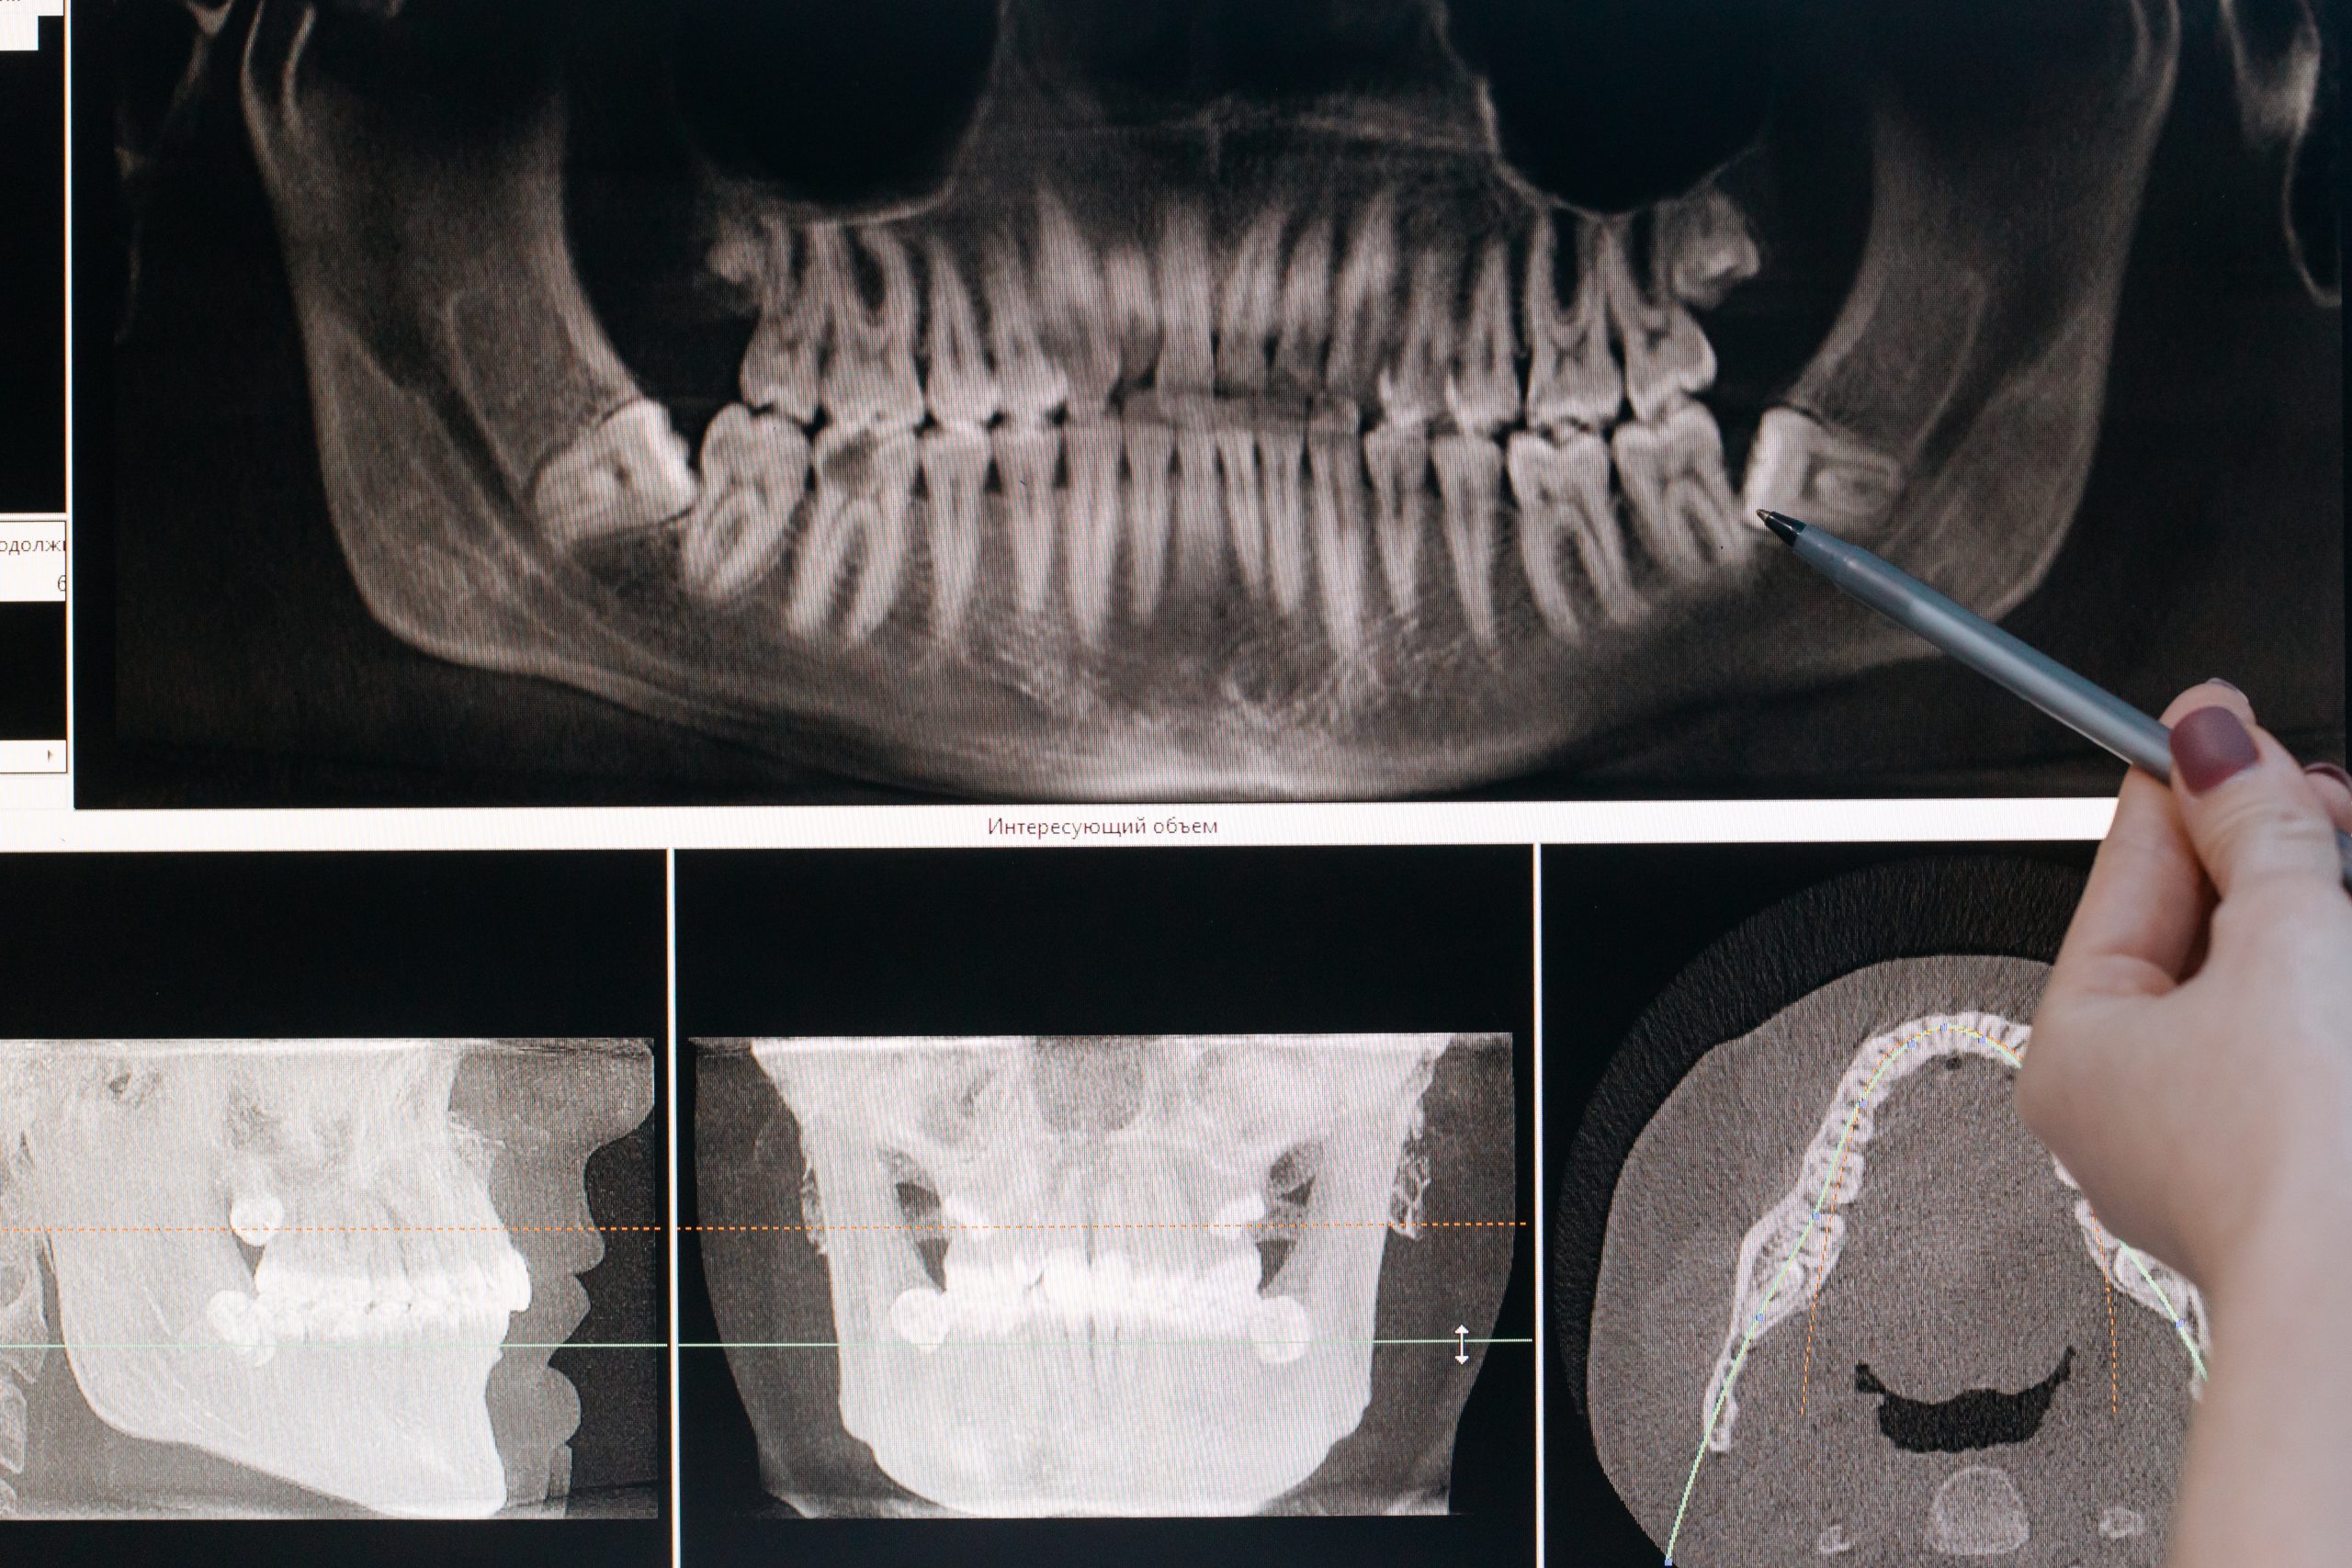 Comment cicatriser une dent arrachée ? | dentiste la defense